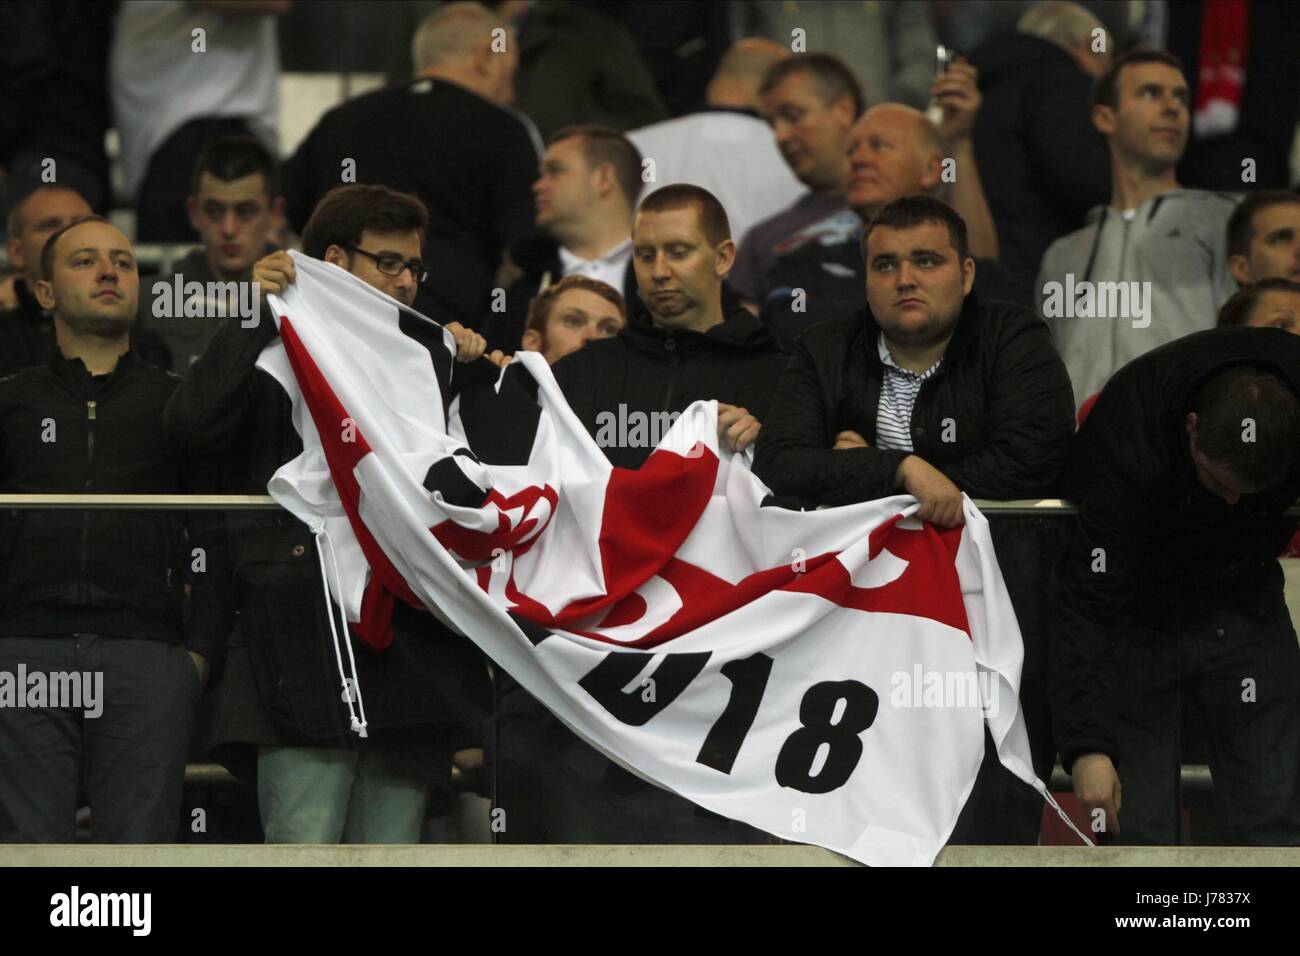 Inglaterra FANS retirar las banderas de Polonia e Inglaterra en el Estadio Nacional de Varsovia, Polonia el 16 de octubre de 2012 Foto de stock